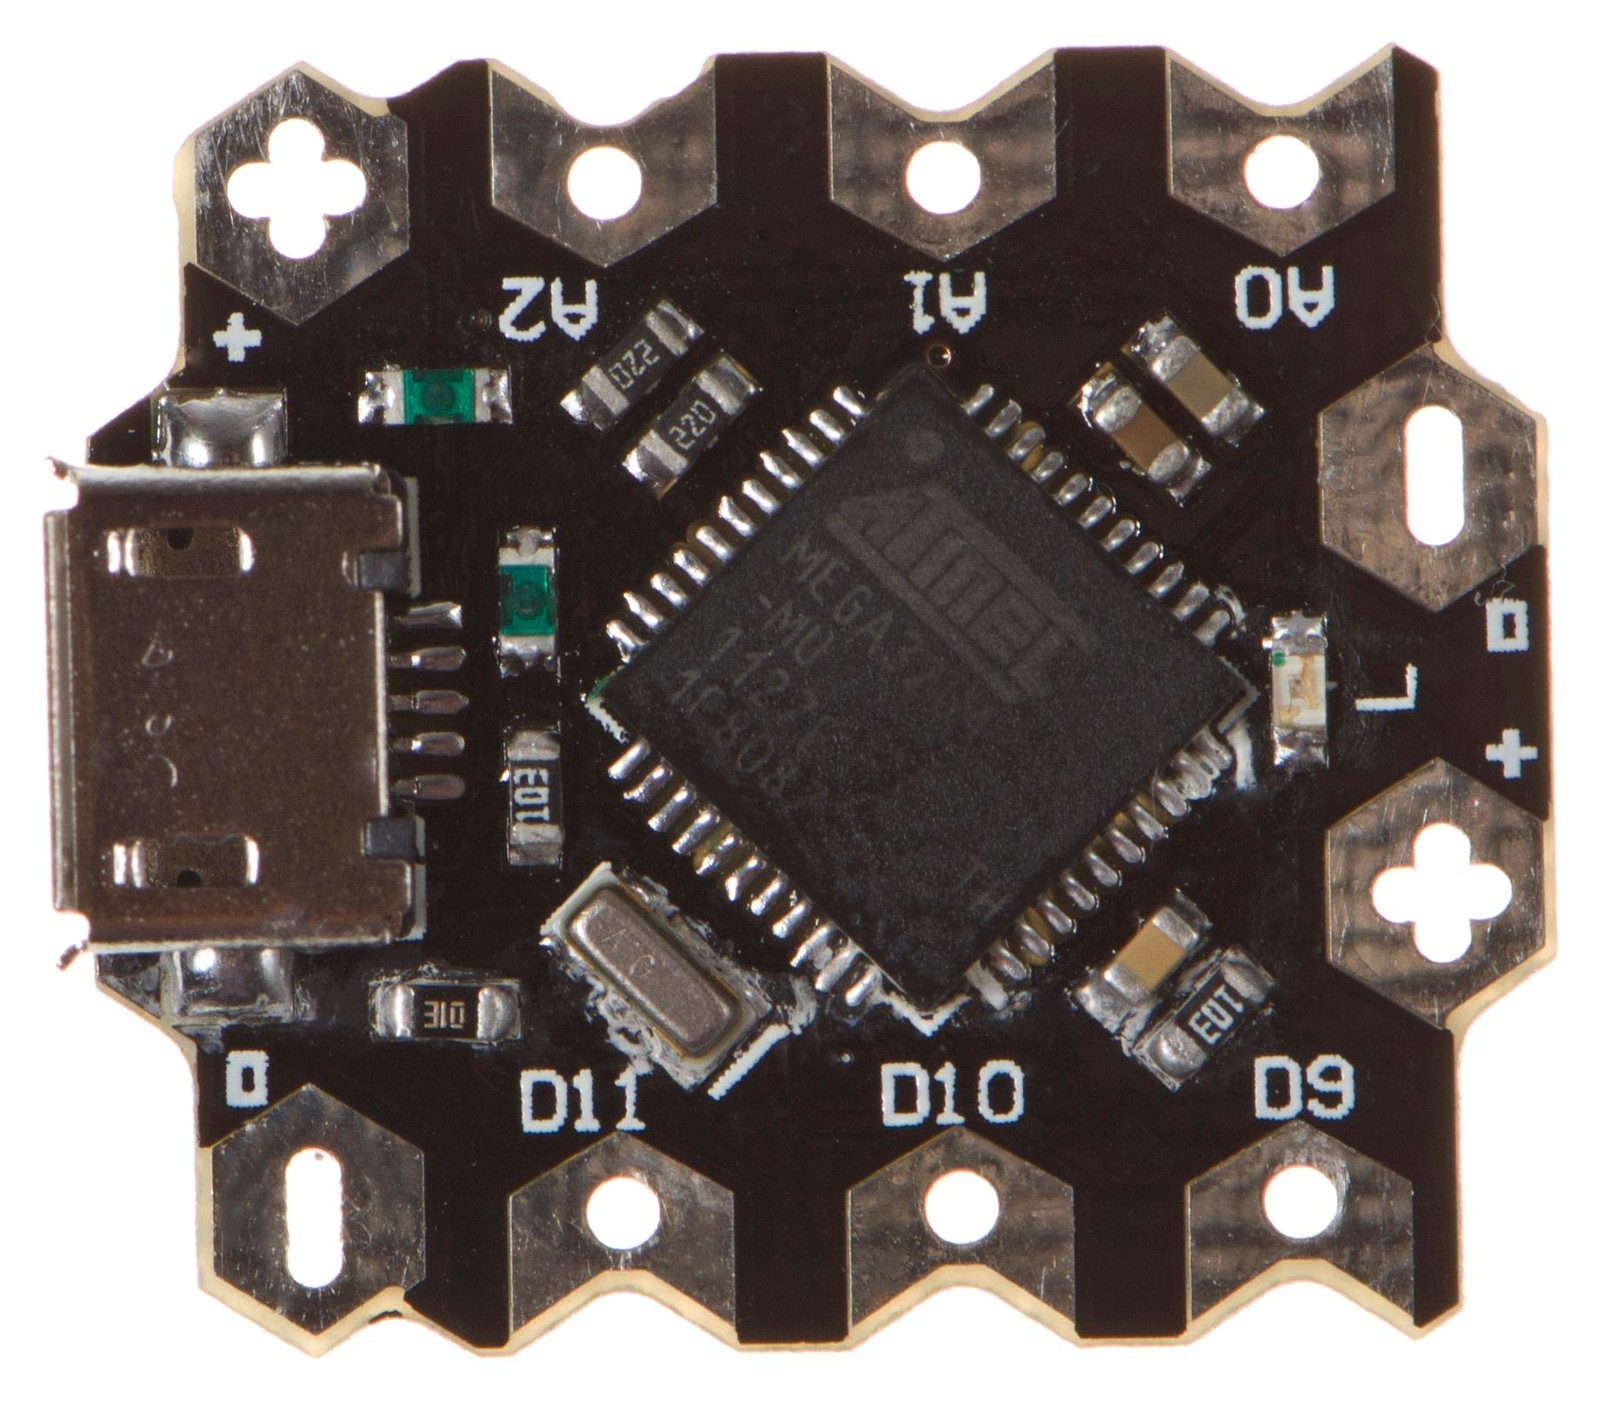 DFRobot Dfr0282 Beetle - The Smallest Arduino Board